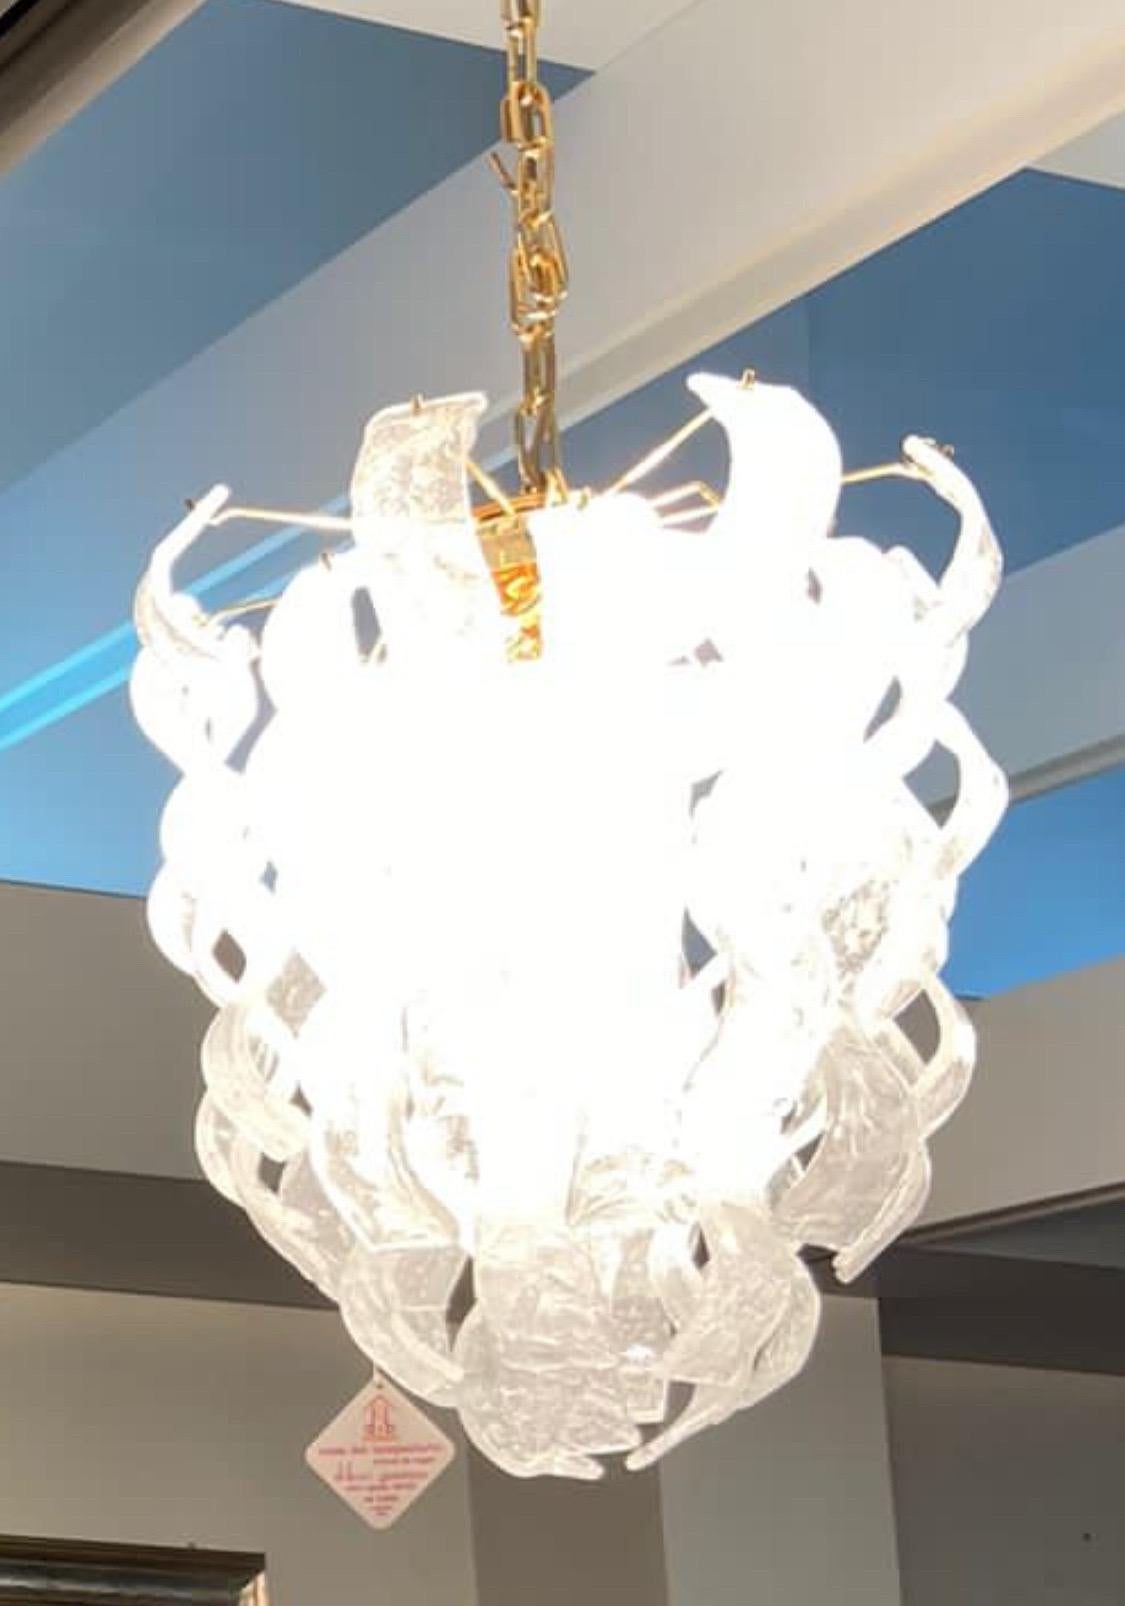 Un étonnant lustre en verre Murano blanc givré, conçu et fabriqué en Italie dans les années soixante-dix. Composé d'éléments en métal doré et en verre de Murano glacé, il n'a jamais été utilisé car il provient d'un important magasin de luminaires en